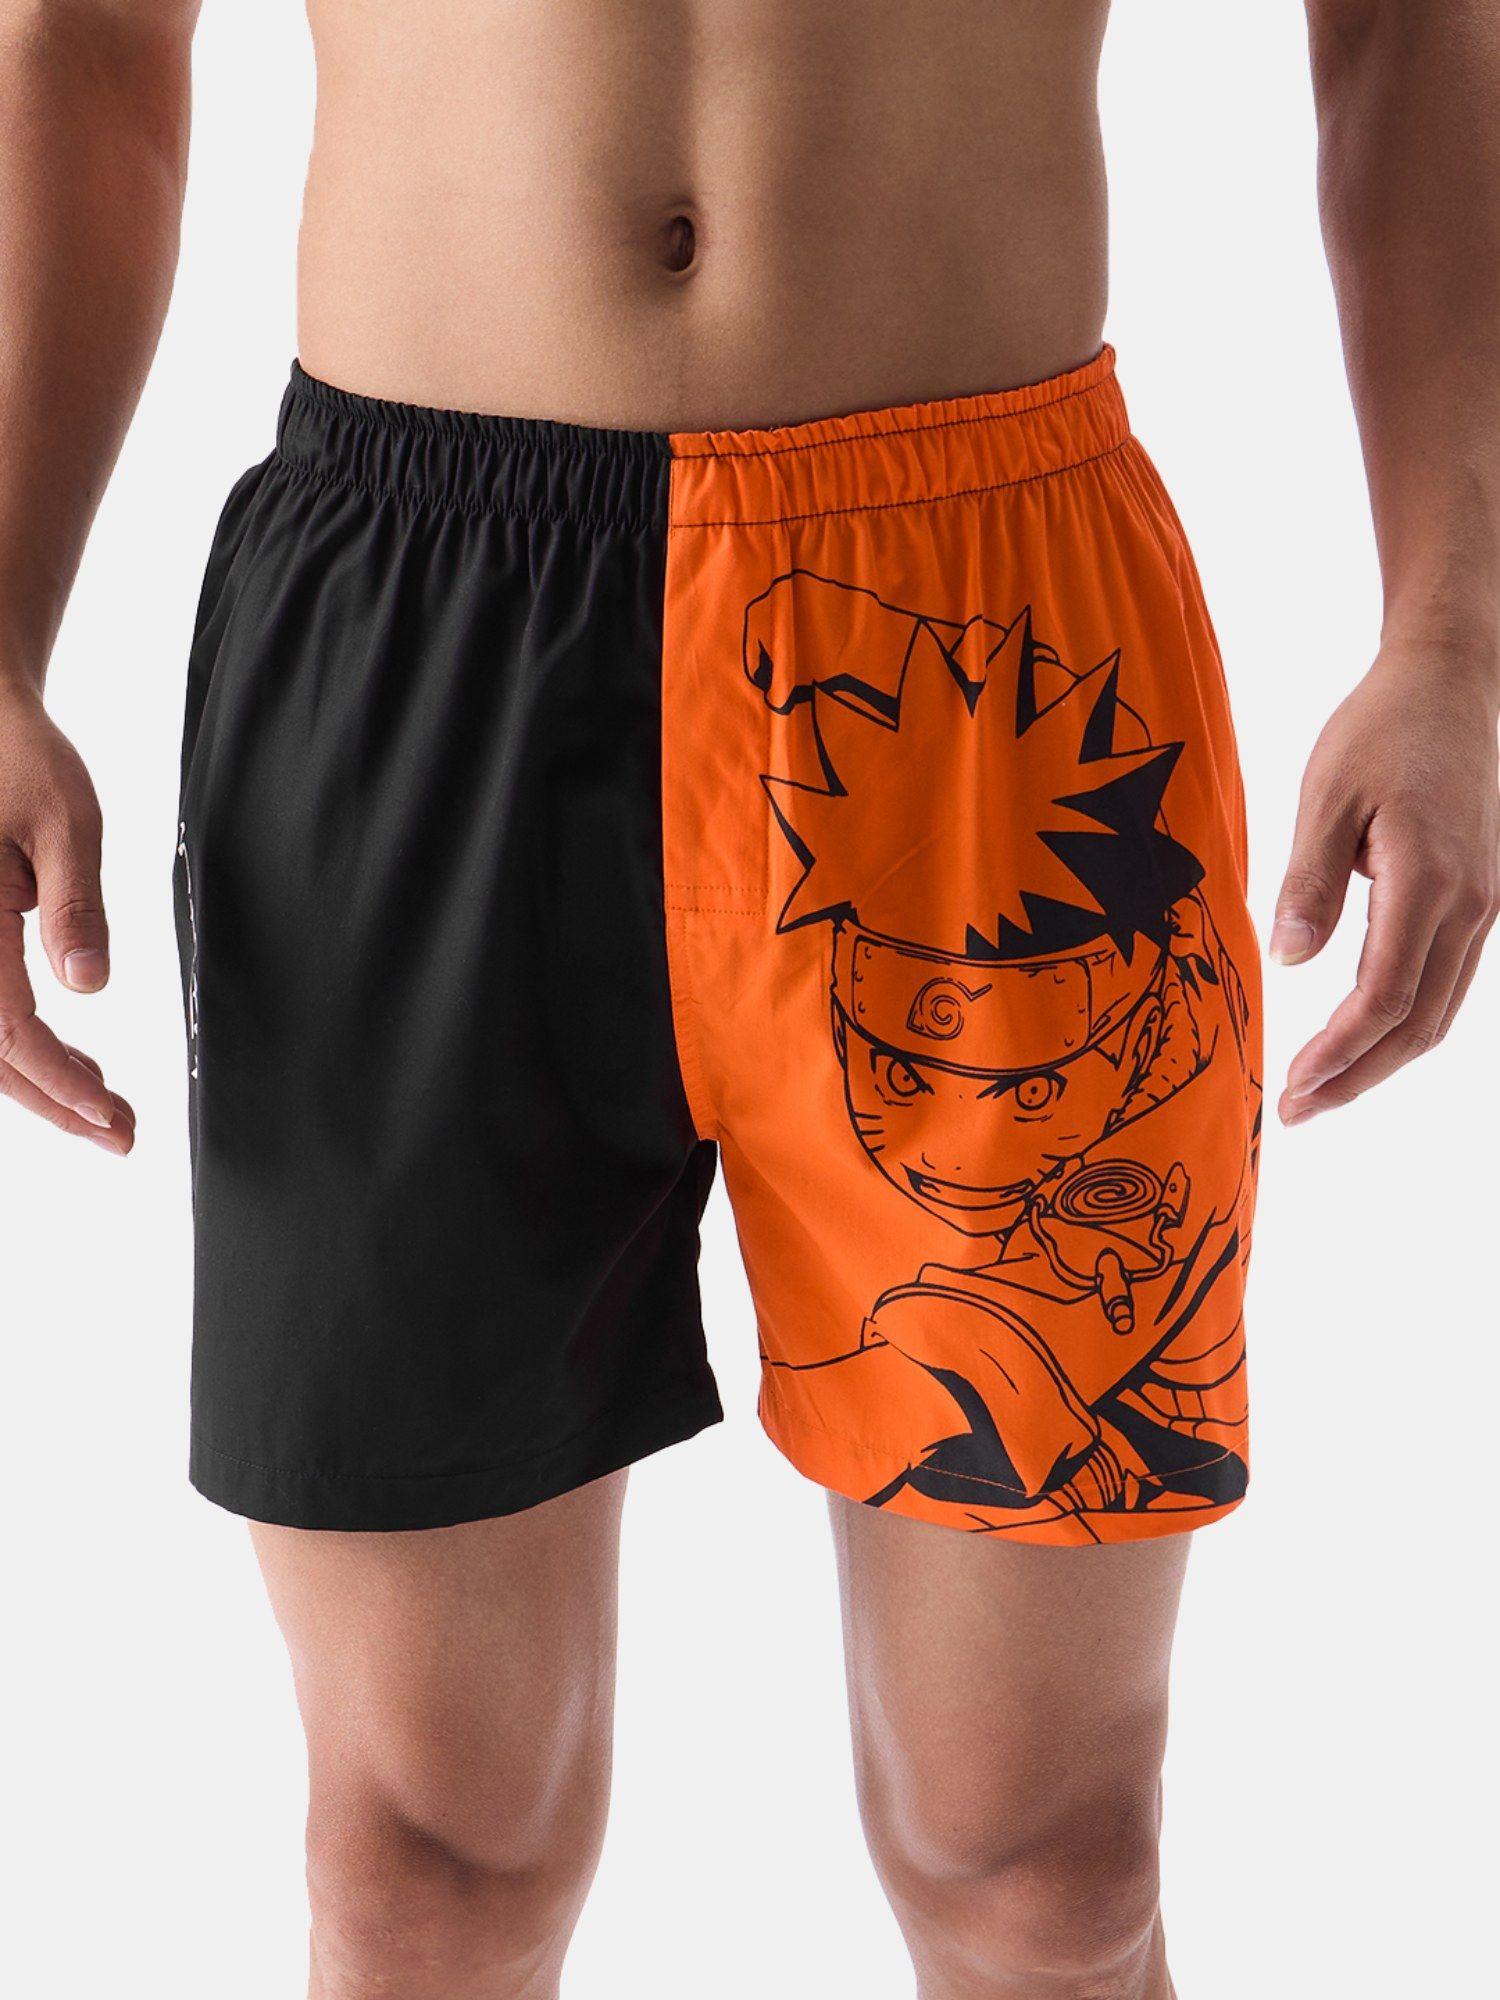 naruto attack boxer shorts for mens